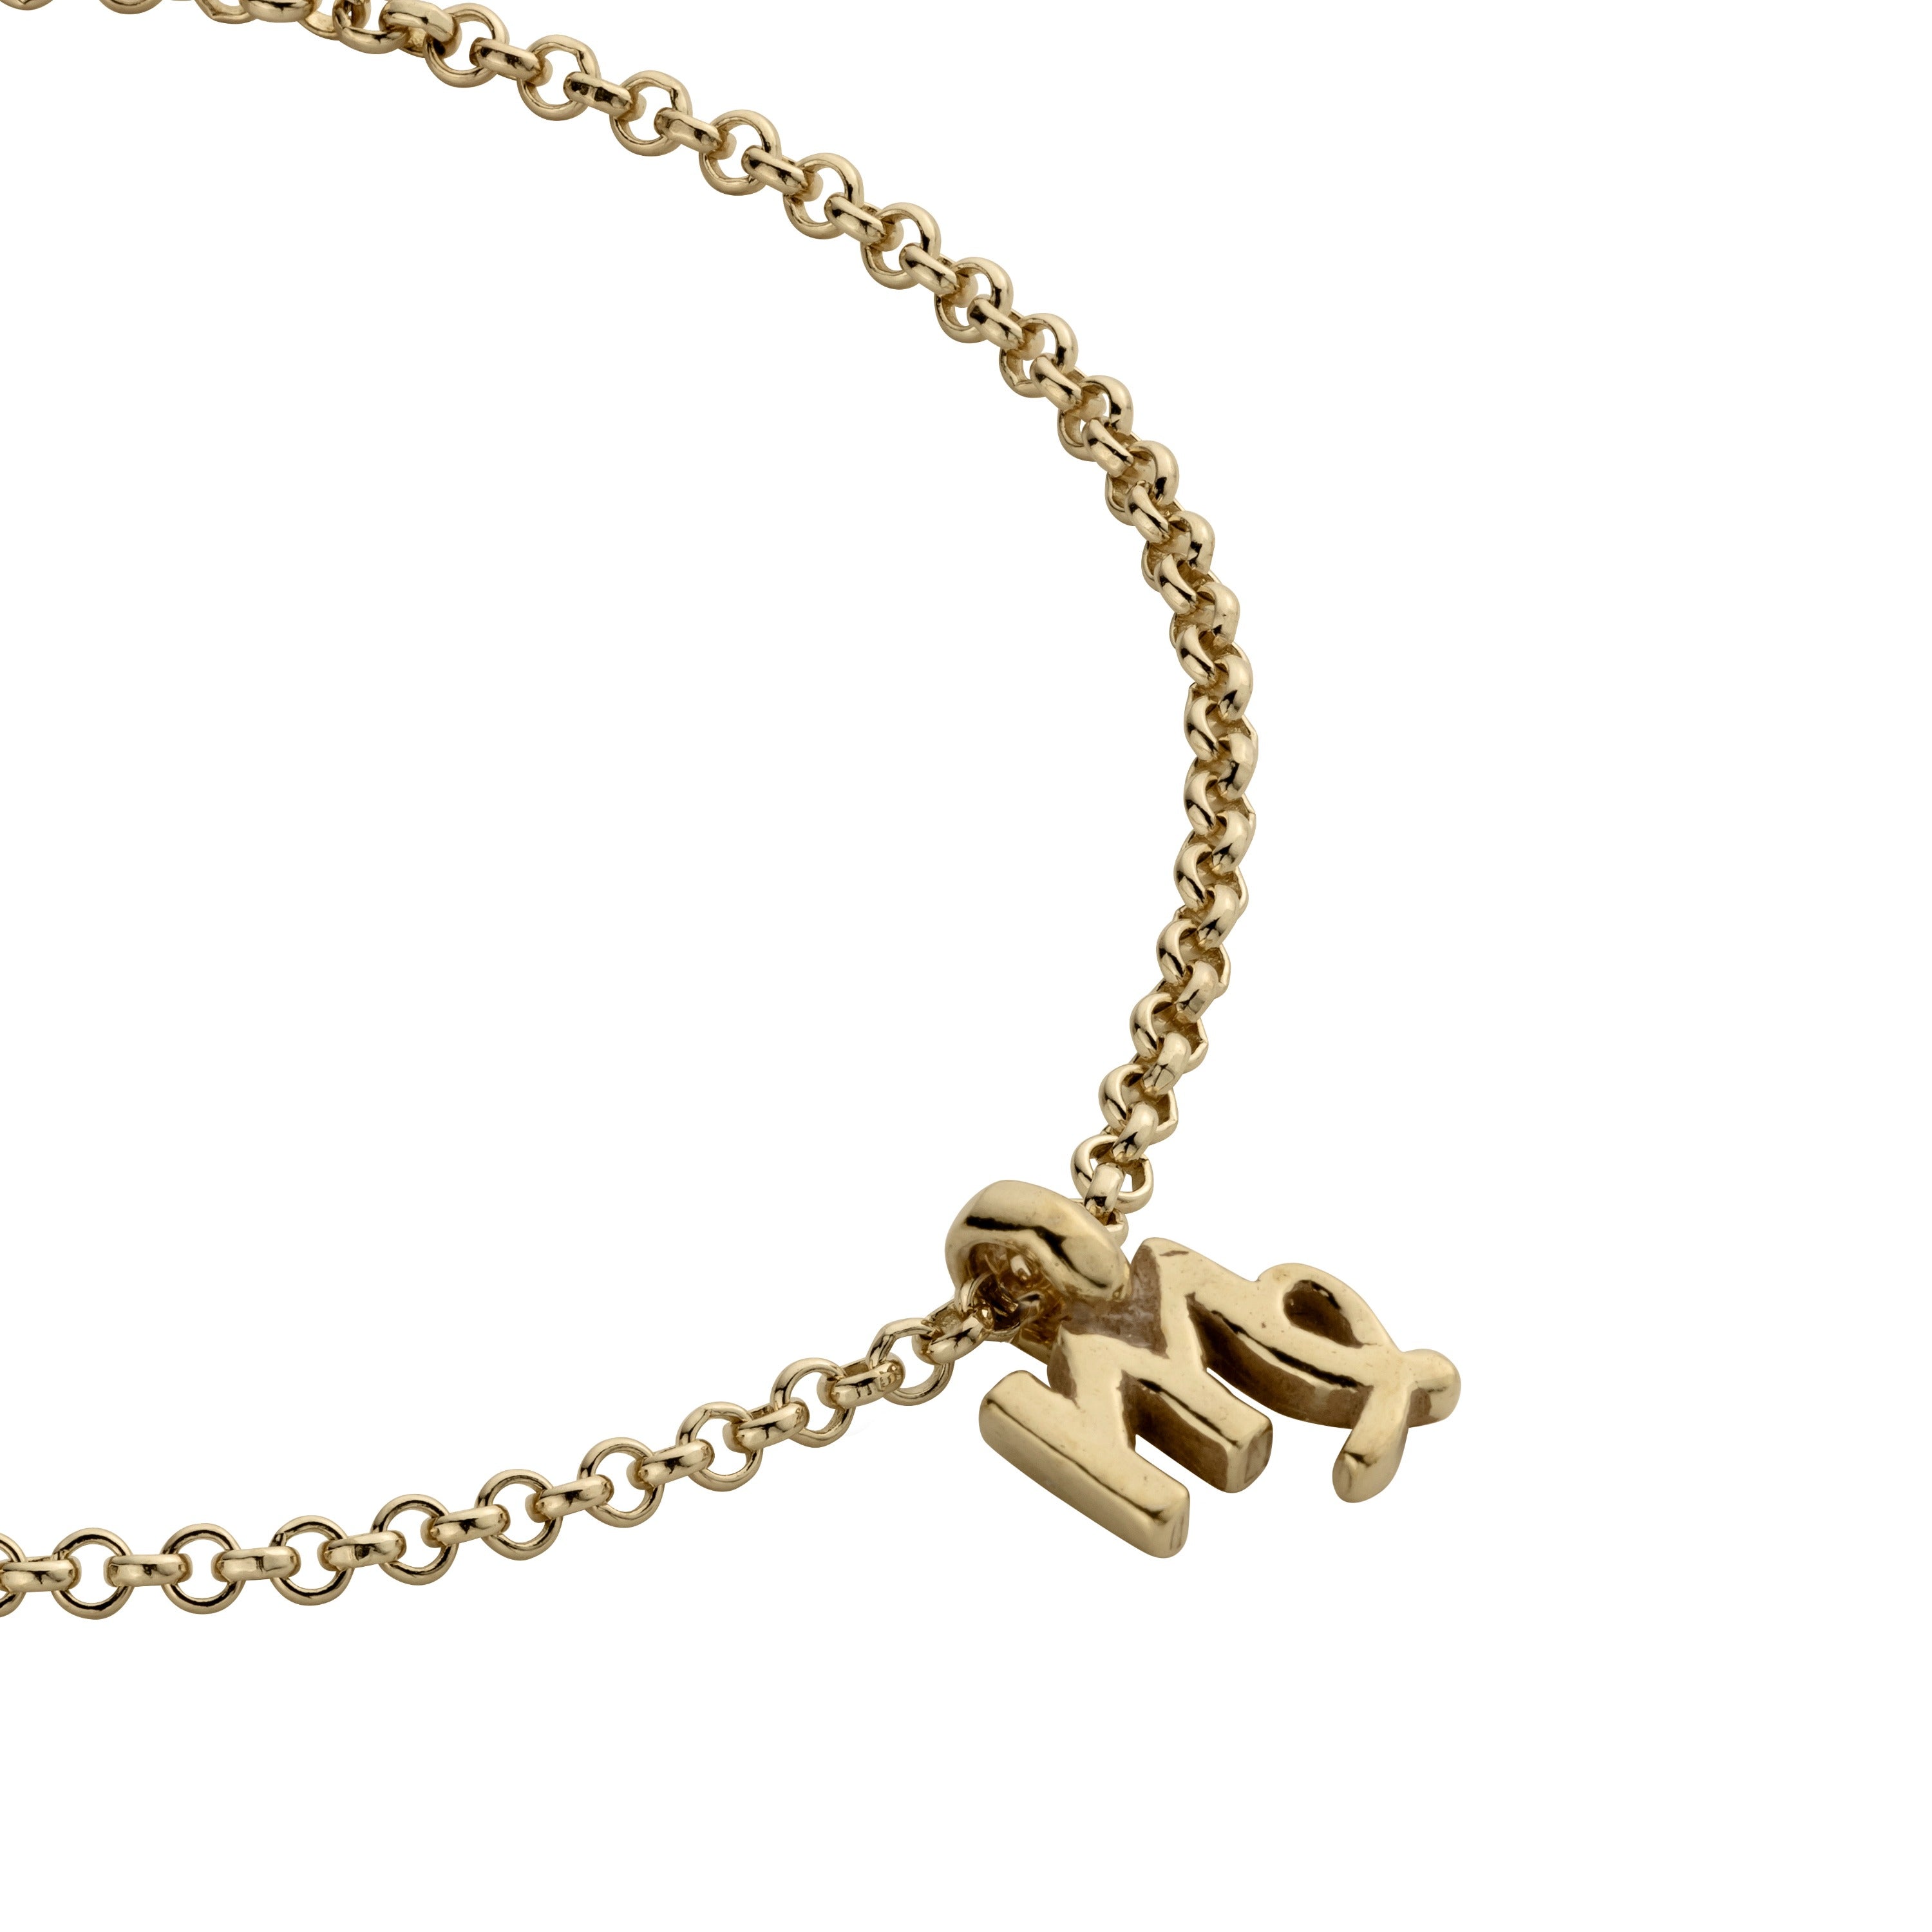 Gold Mini Virgo Horoscope Chain Bracelet